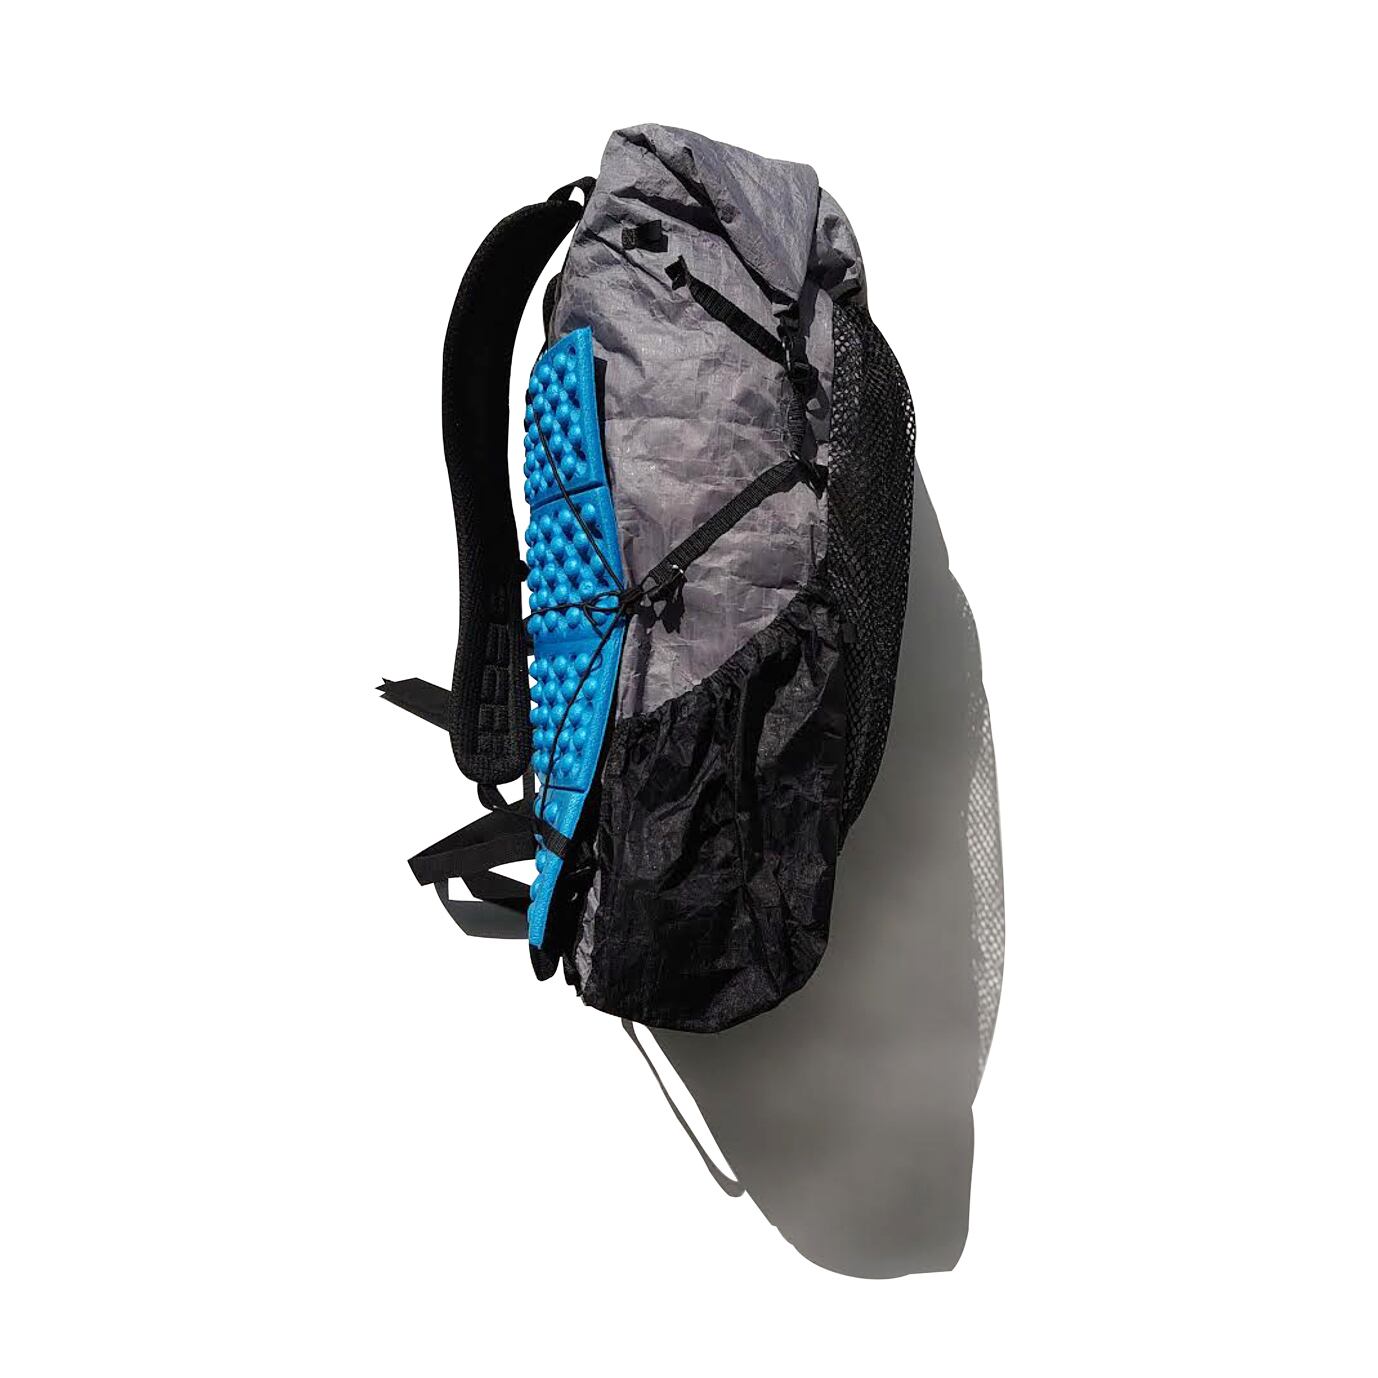 Zpacks Nero 38ℓ Backpacks -Grey- | El Monte Gear